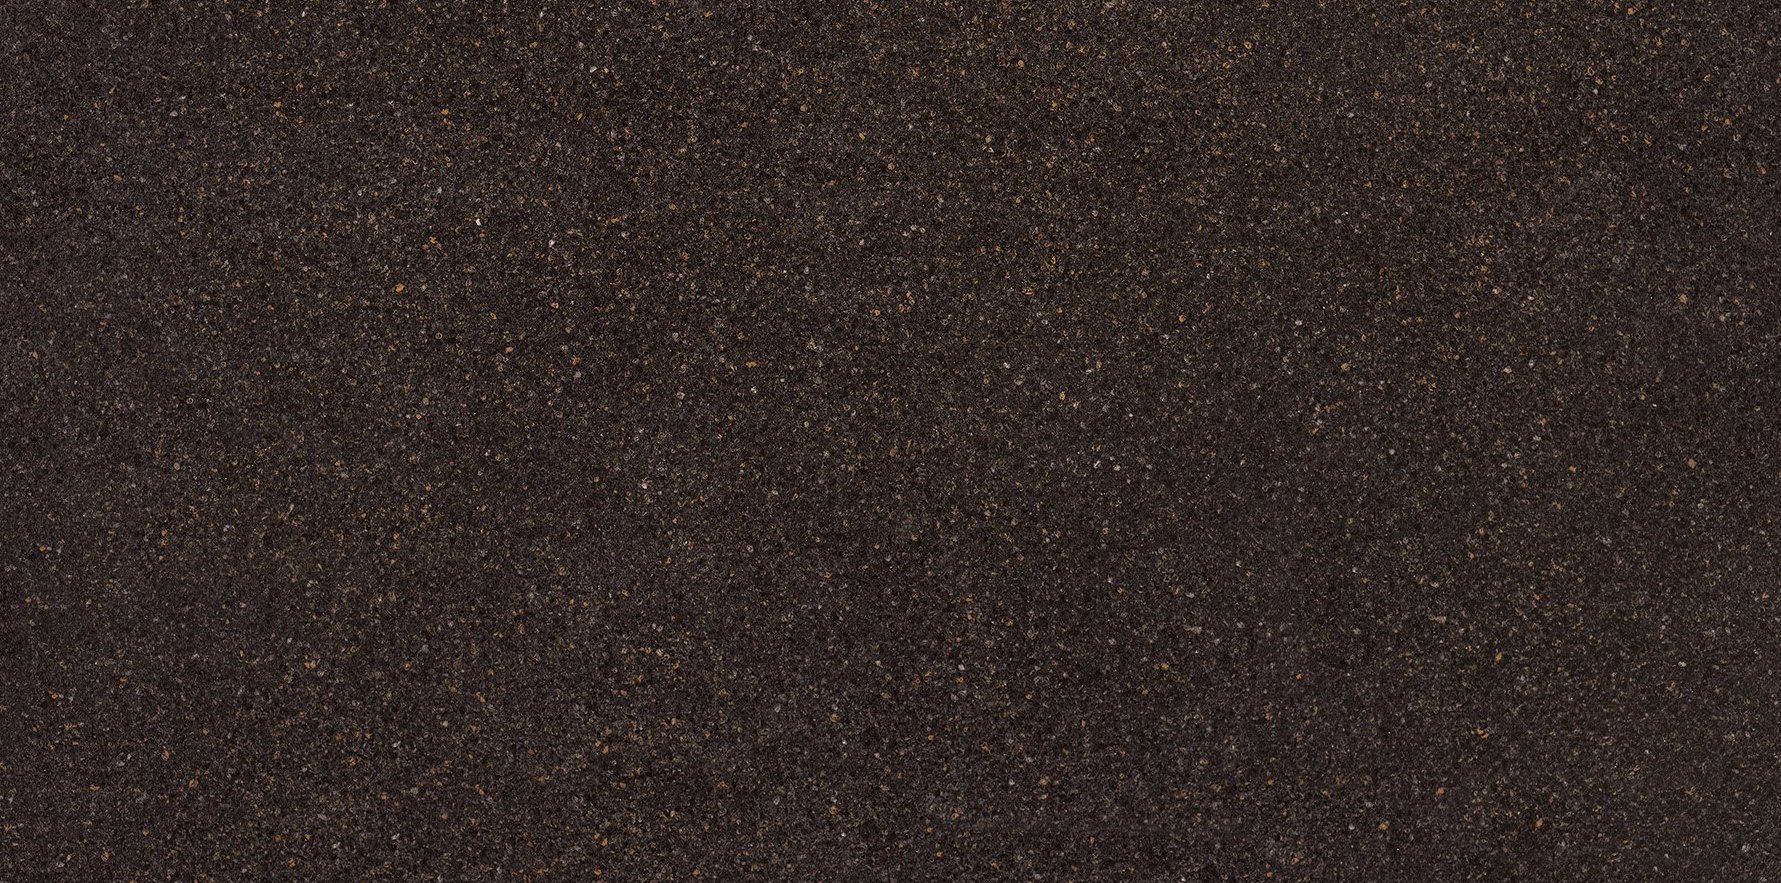 HanStone Quartz Odyssey black quartz countertop surface full slab